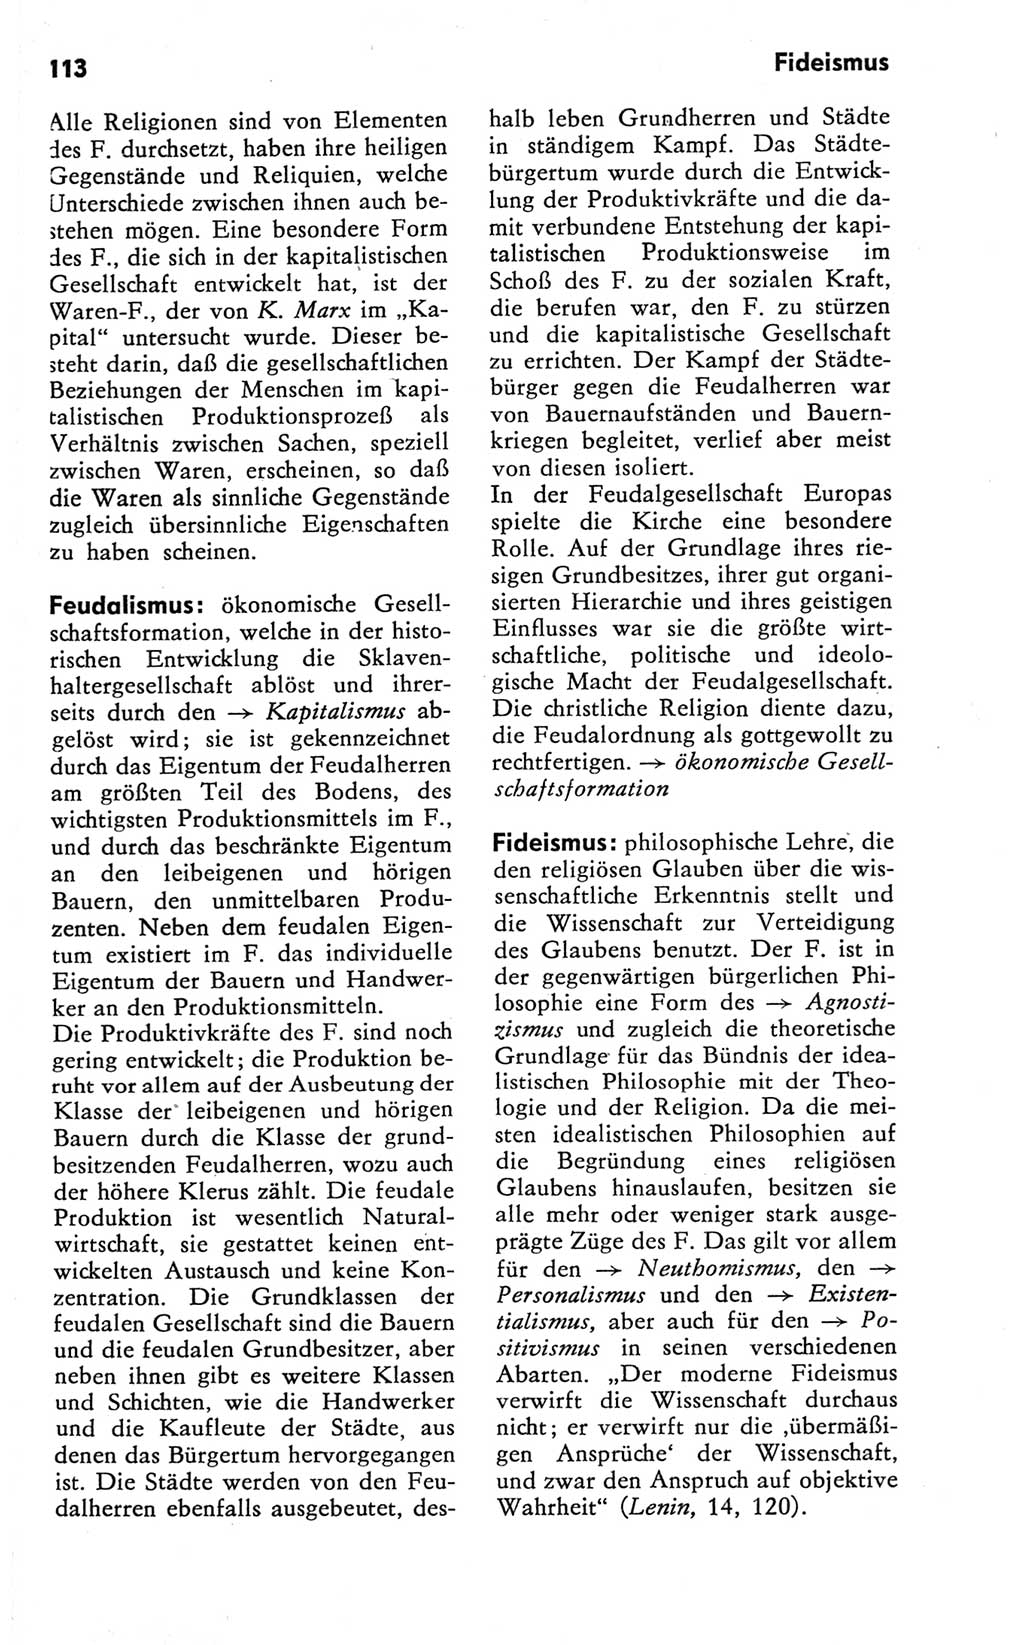 Kleines Wörterbuch der marxistisch-leninistischen Philosophie [Deutsche Demokratische Republik (DDR)] 1981, Seite 113 (Kl. Wb. ML Phil. DDR 1981, S. 113)